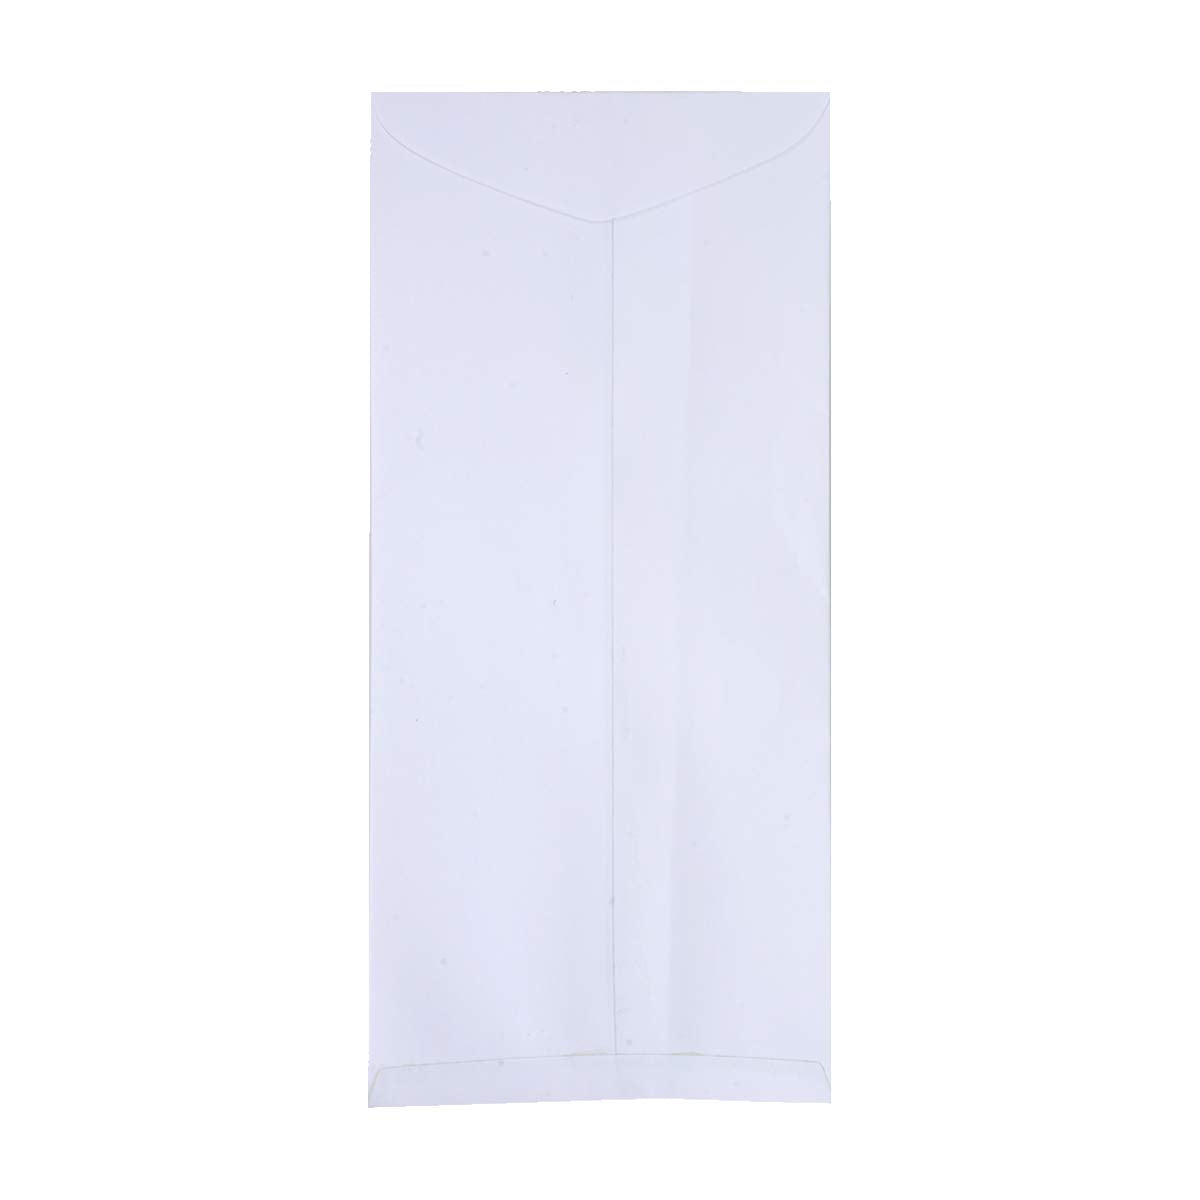 Trison White Envelopes (120 GSM)